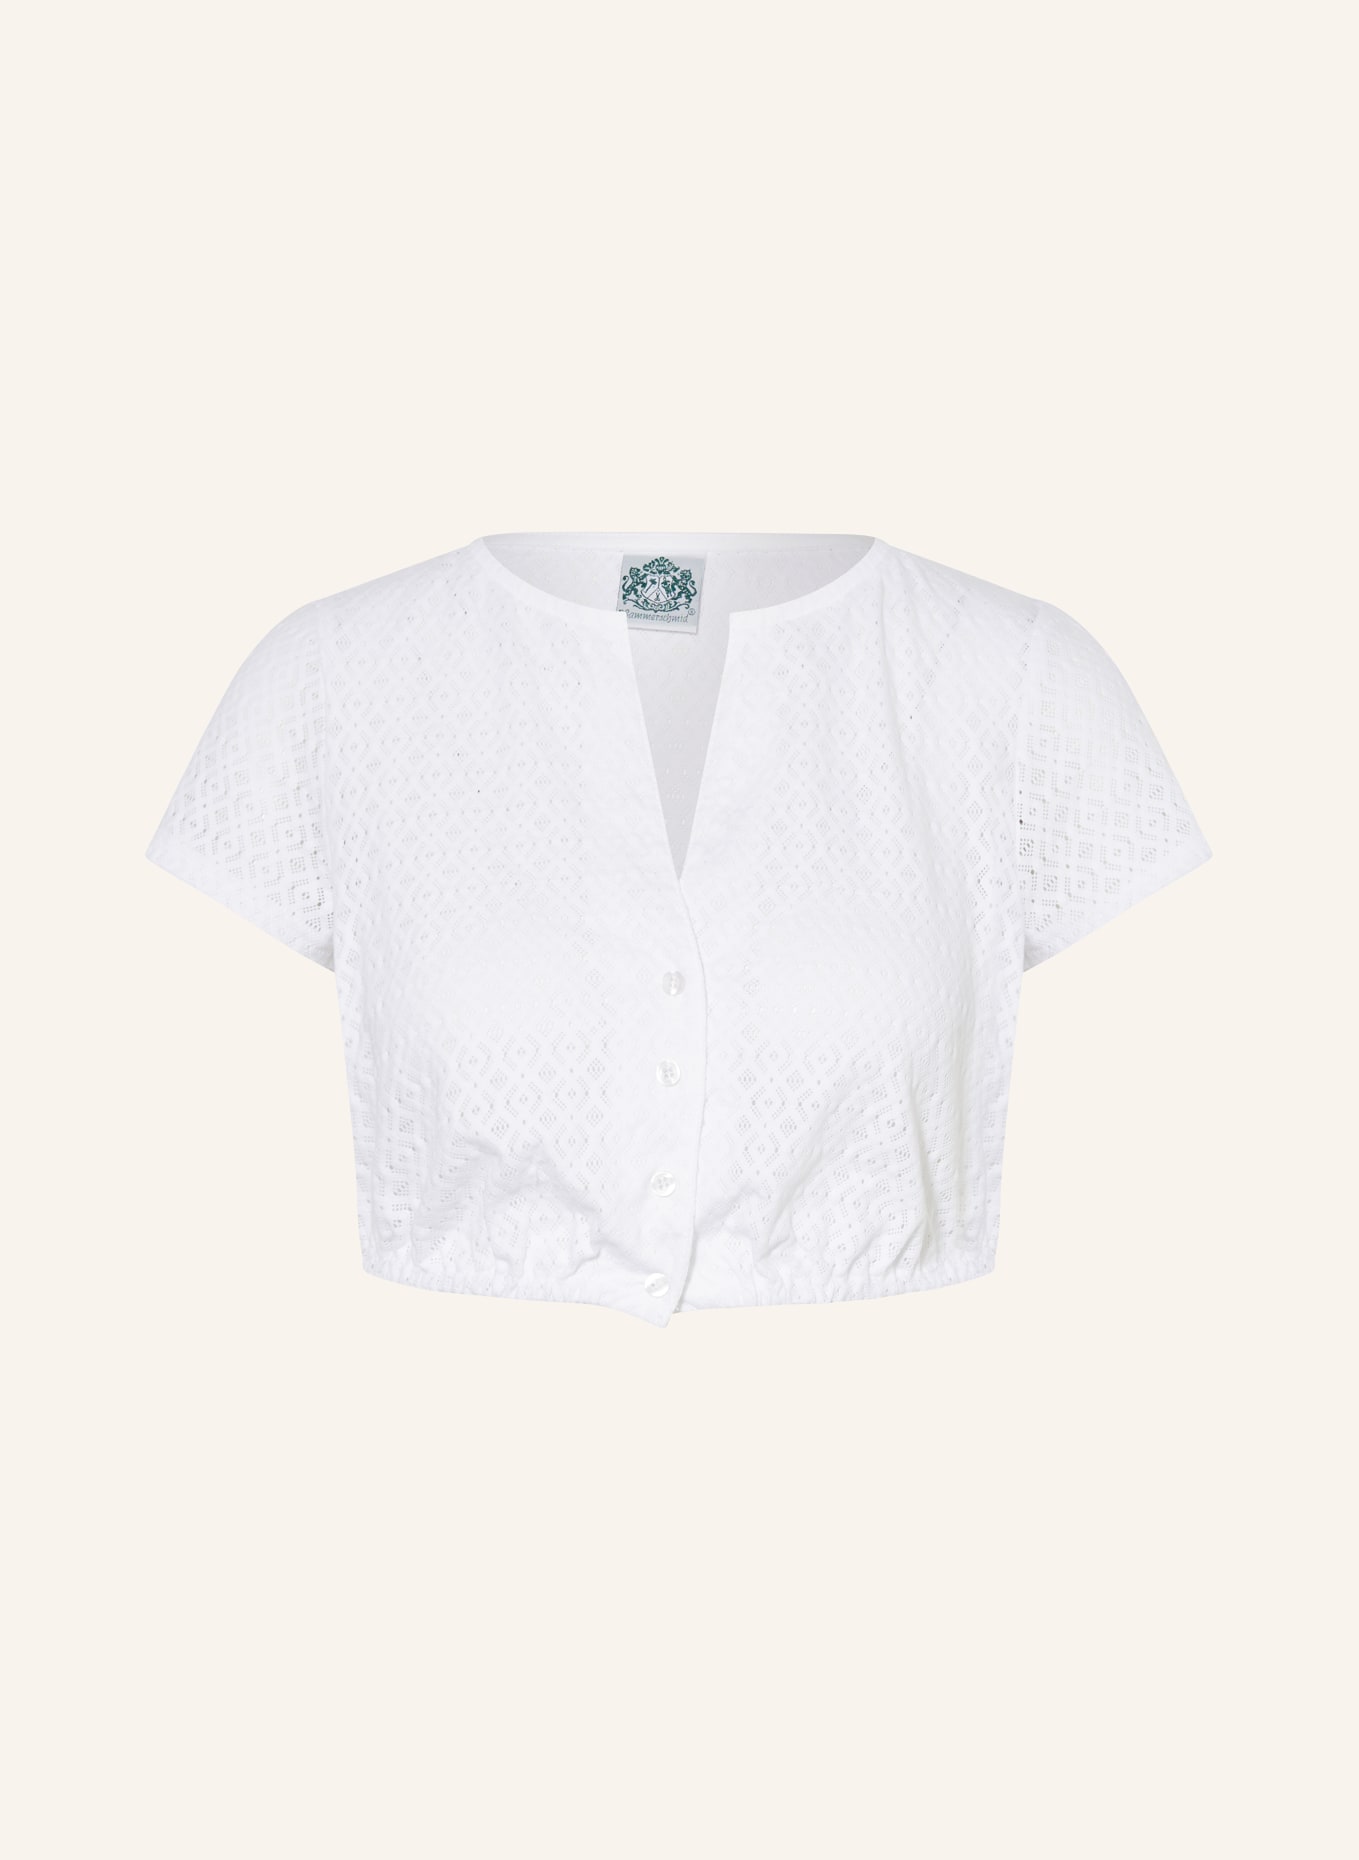 Hammerschmid Dirndl blouse SENTA, Color: WHITE (Image 1)